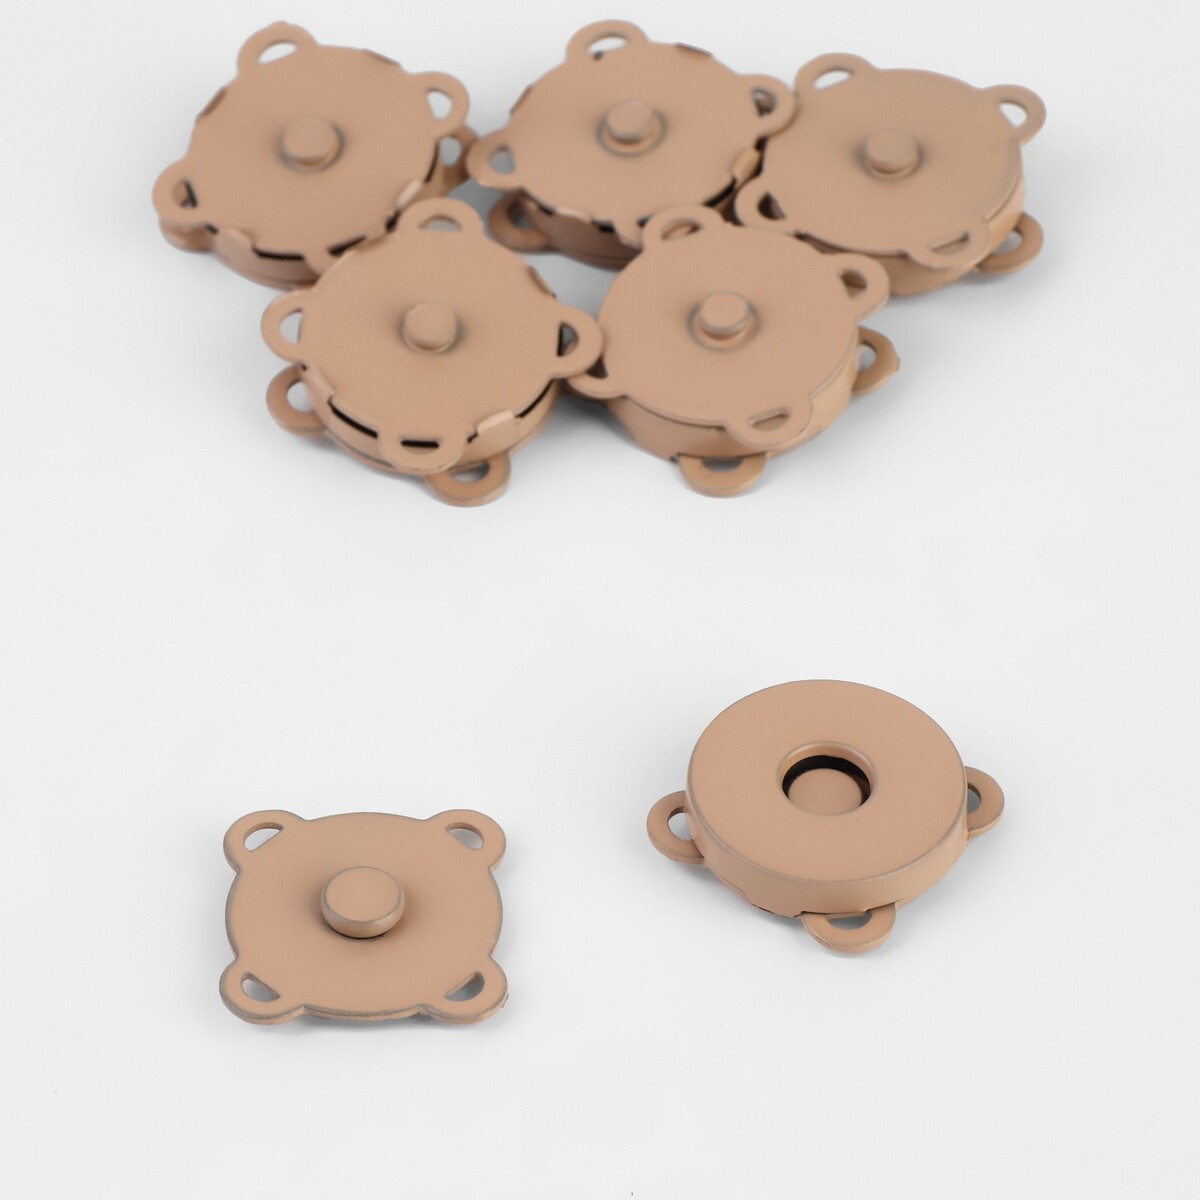 Кнопки магнитные, пришивные, d = 18 мм, 6 шт, цвет бежевый матовый набор аксессуаров для ванной sofi de marko 36 бежевый